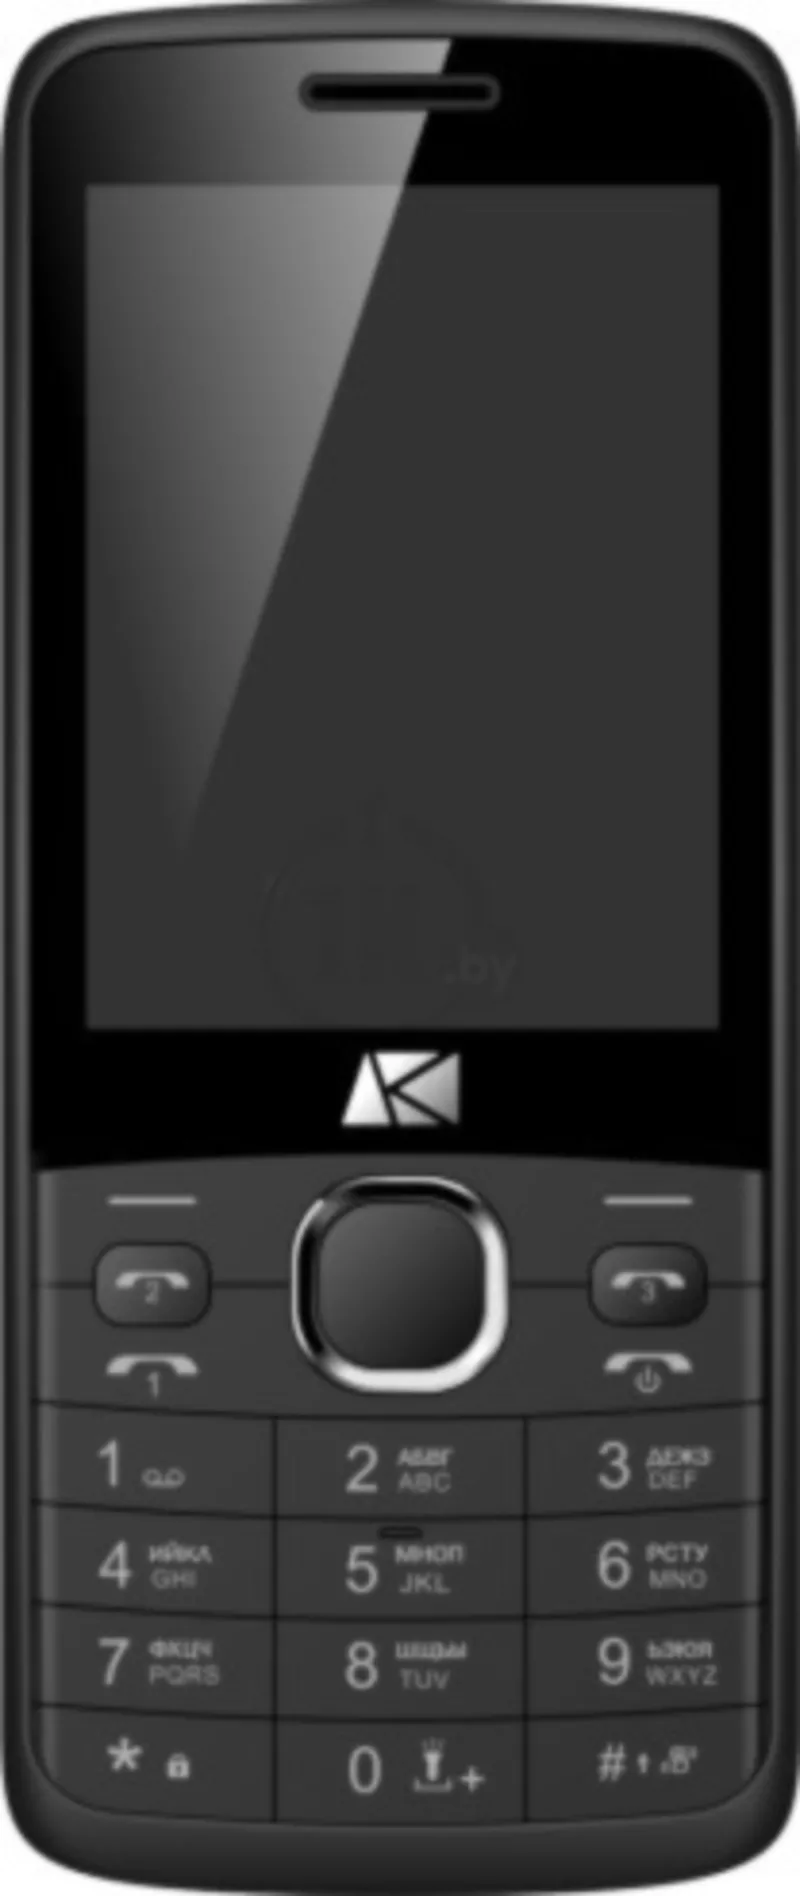 Продам стильный трех симочный телефон с экраном 2.8